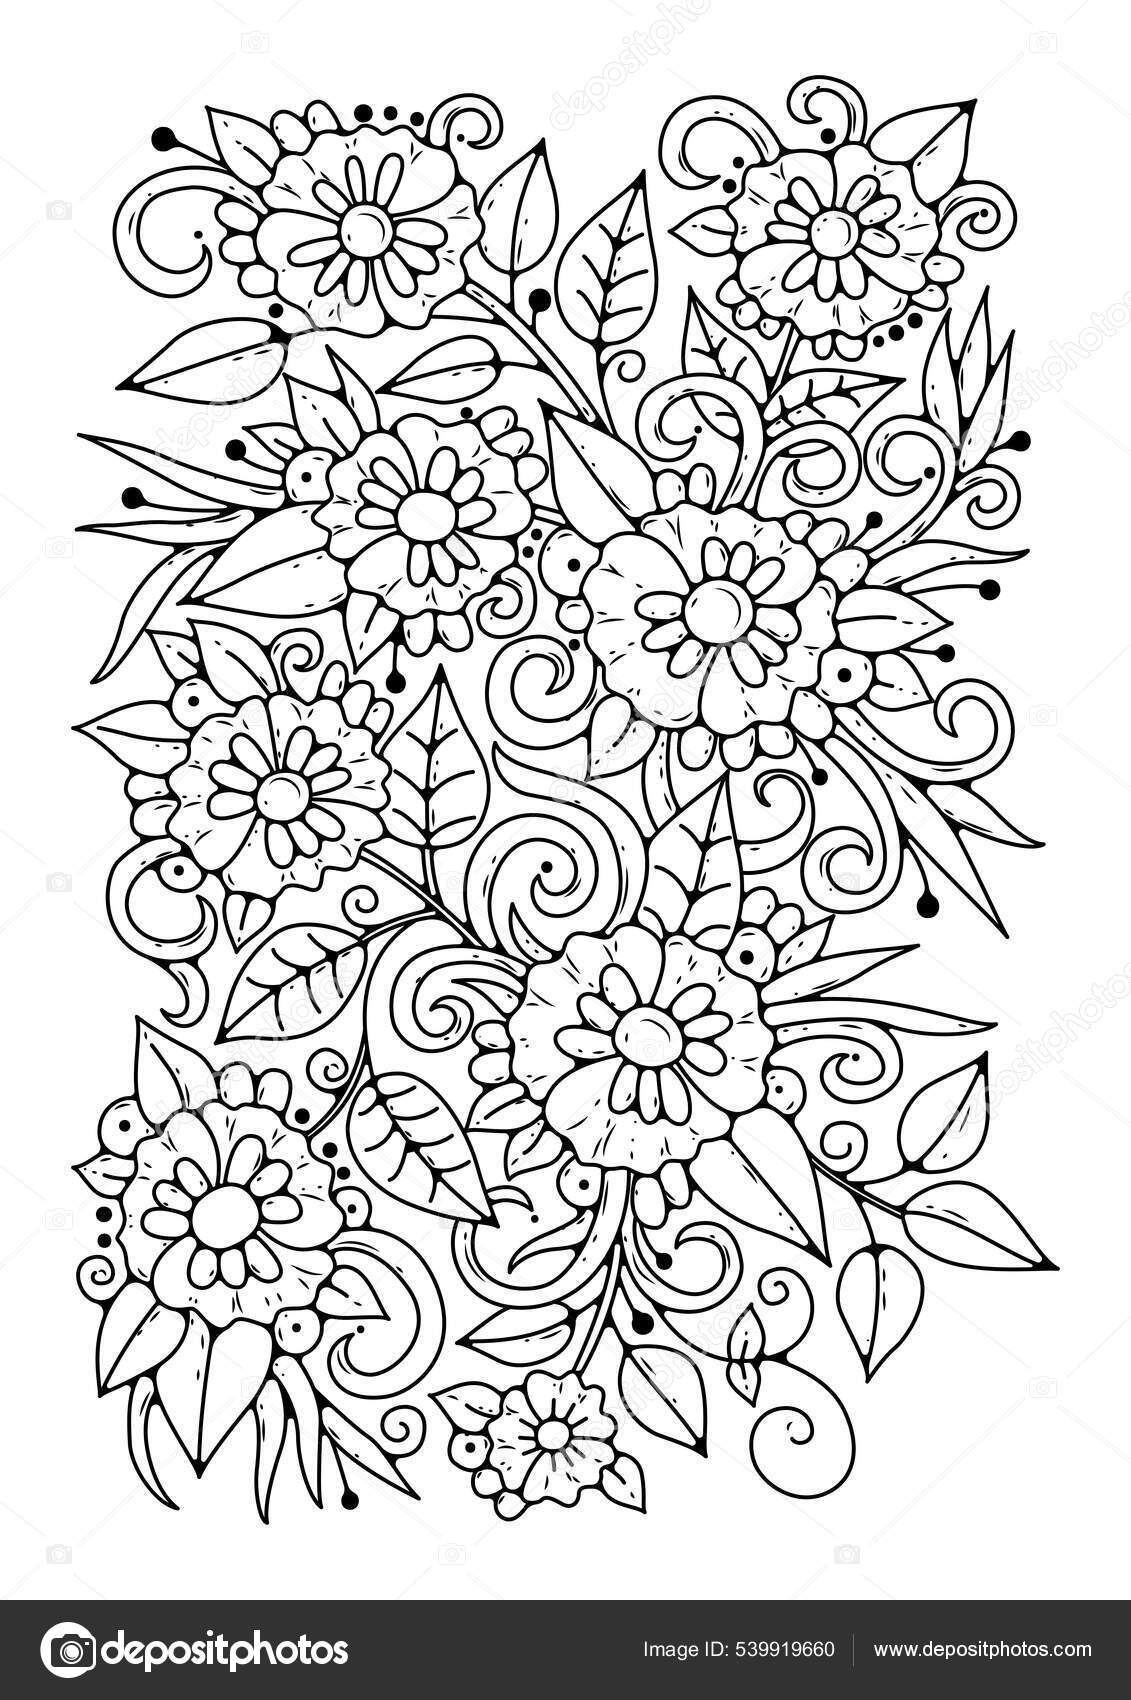 Pages de coloriage de fleurs, pages de coloriage botaniques, page